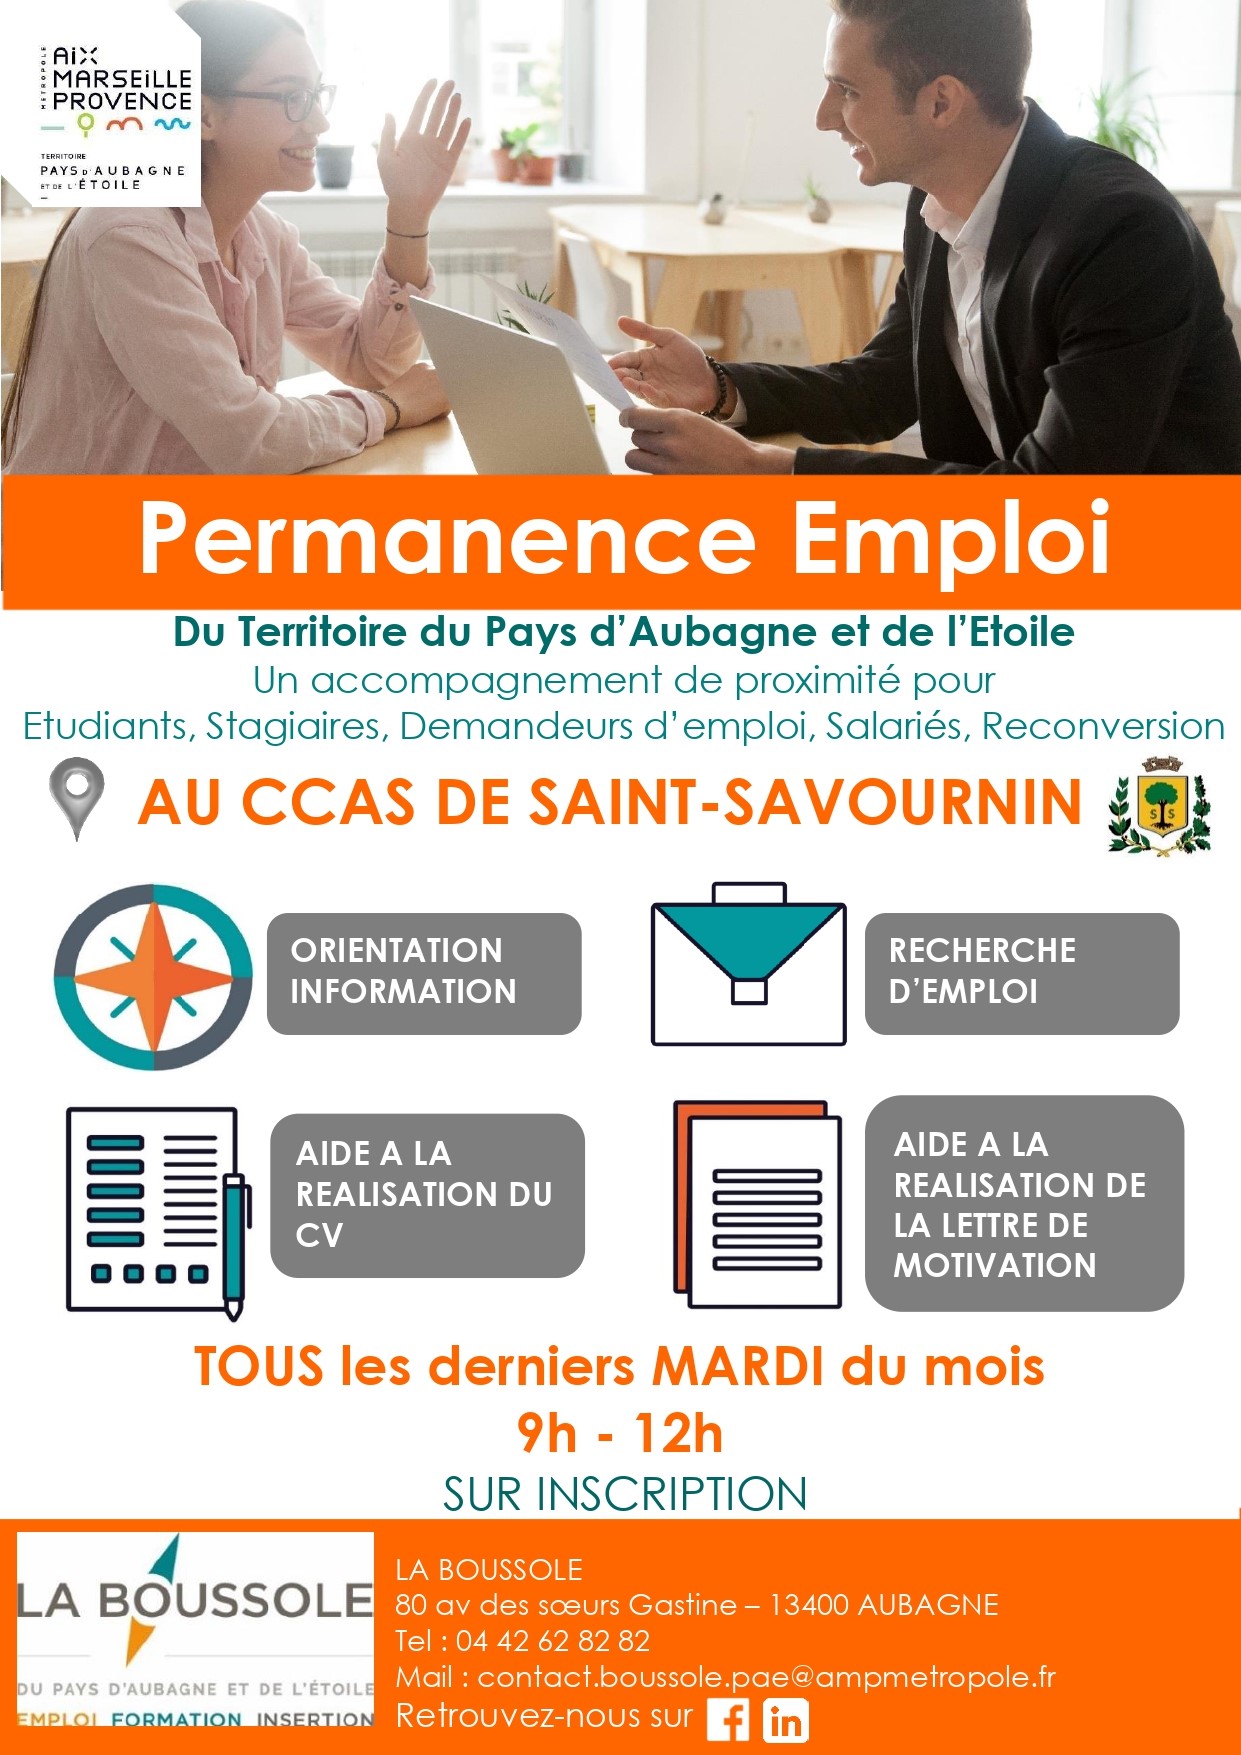 Mairie Saint-Savournin Permanence emploi tous les derniers mardis du mois de 9h à 12h en salle du conseil municipal